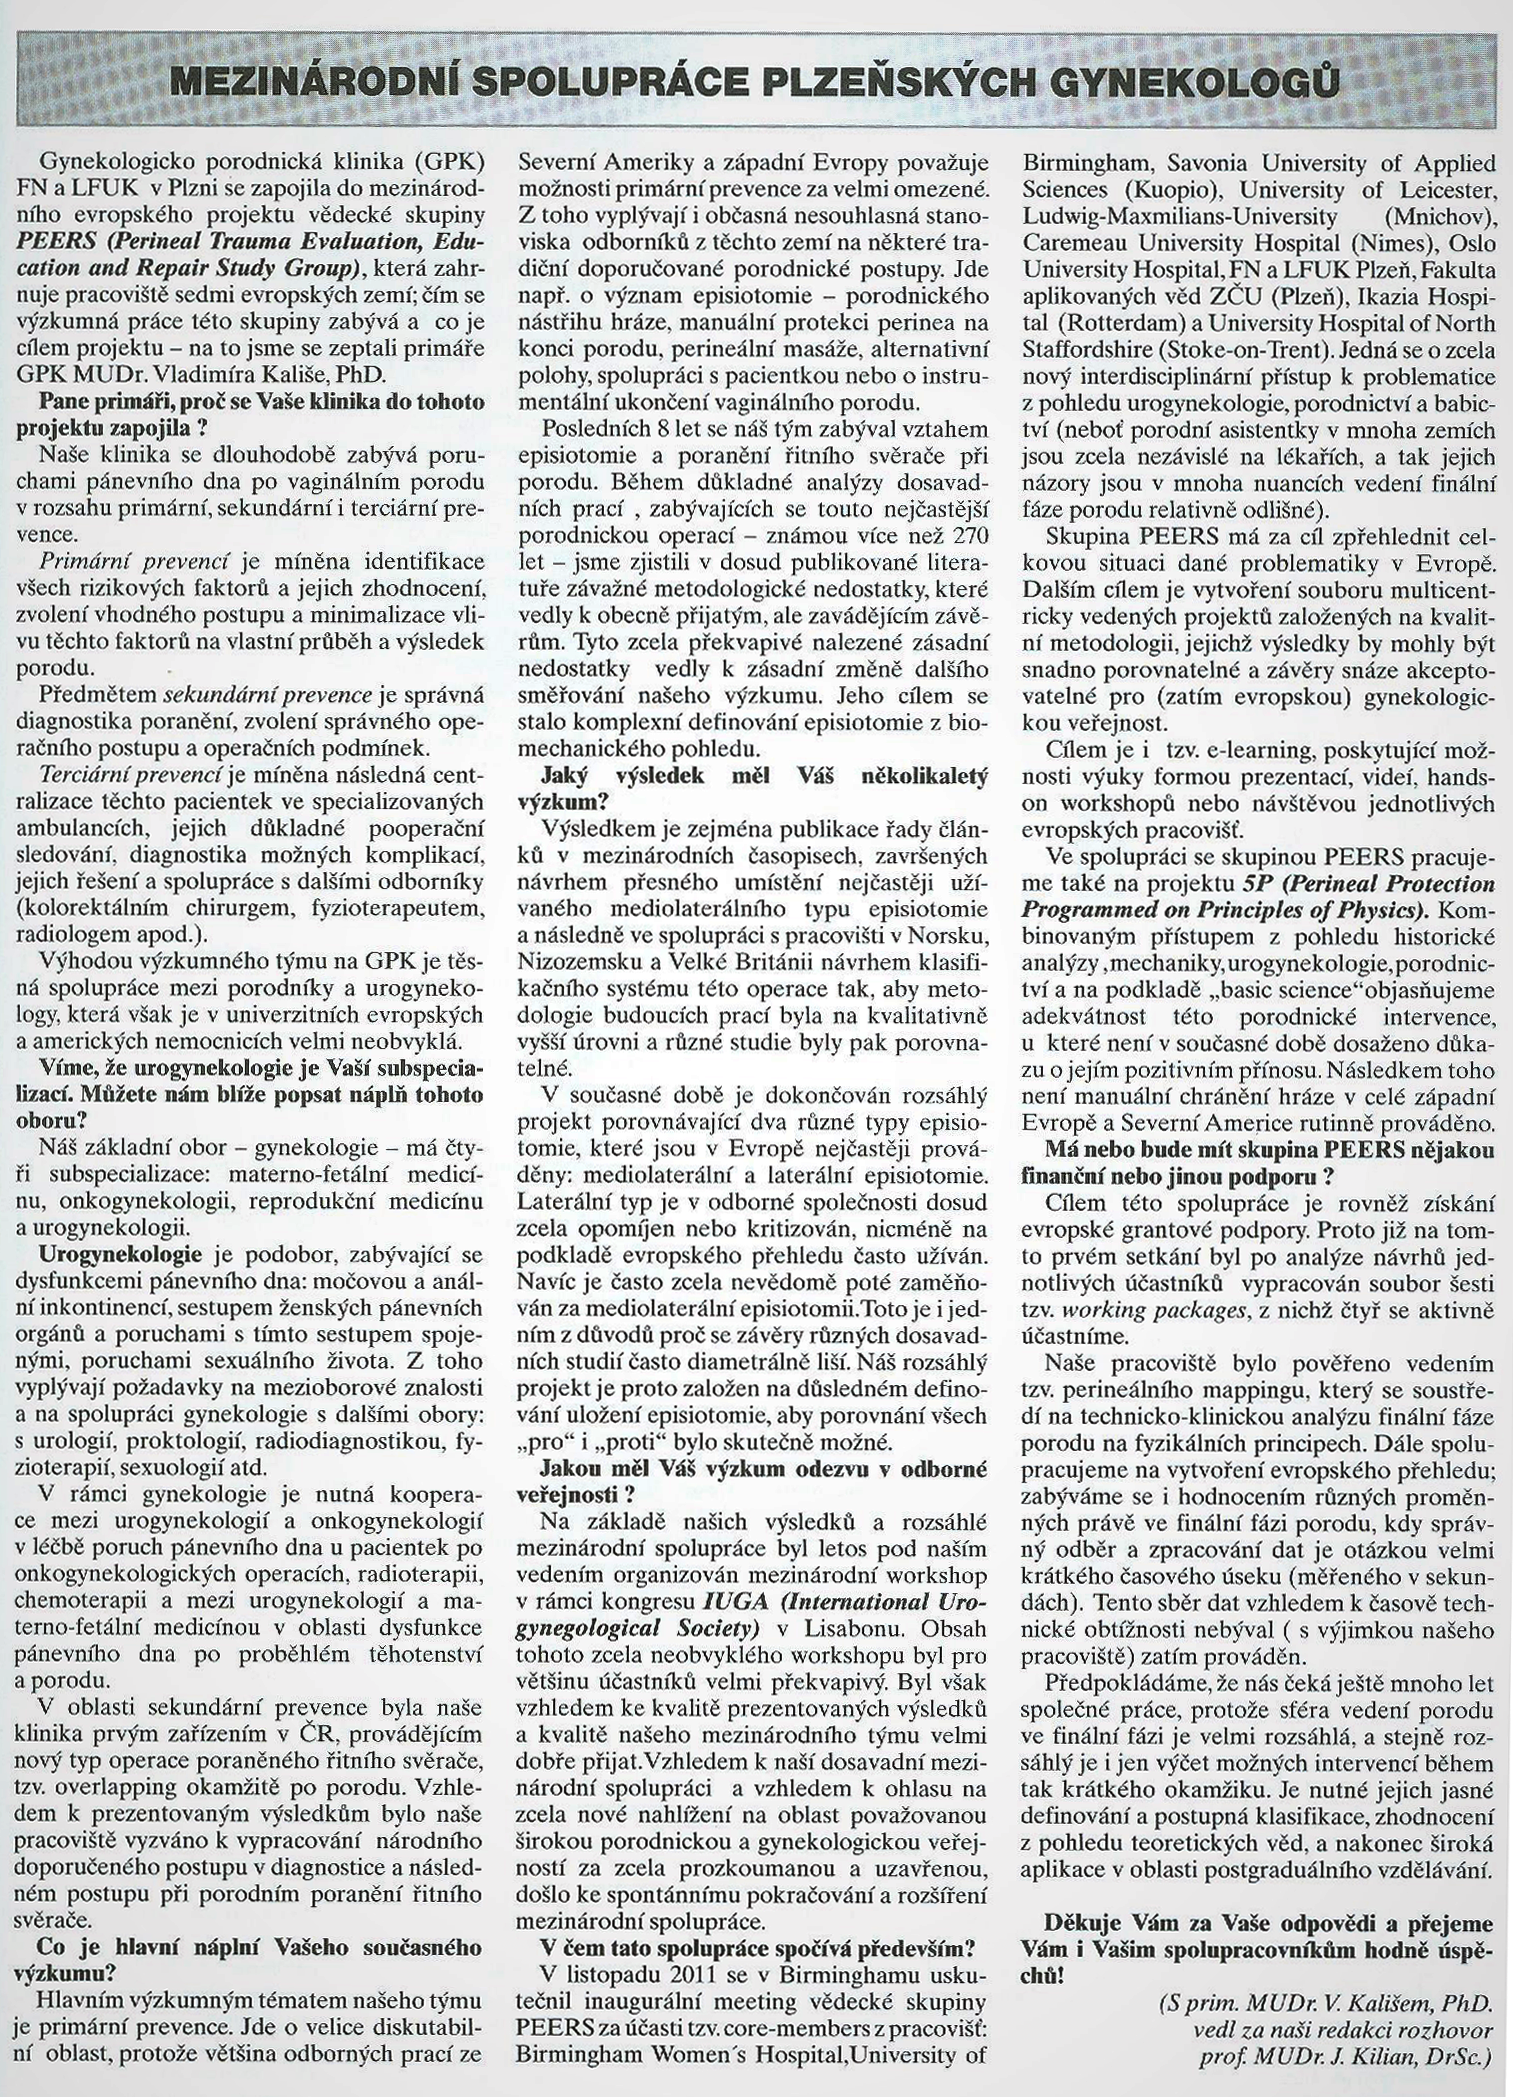 Стаття Міжнародна співпраця пльзеньських гінекологів.jpg.png